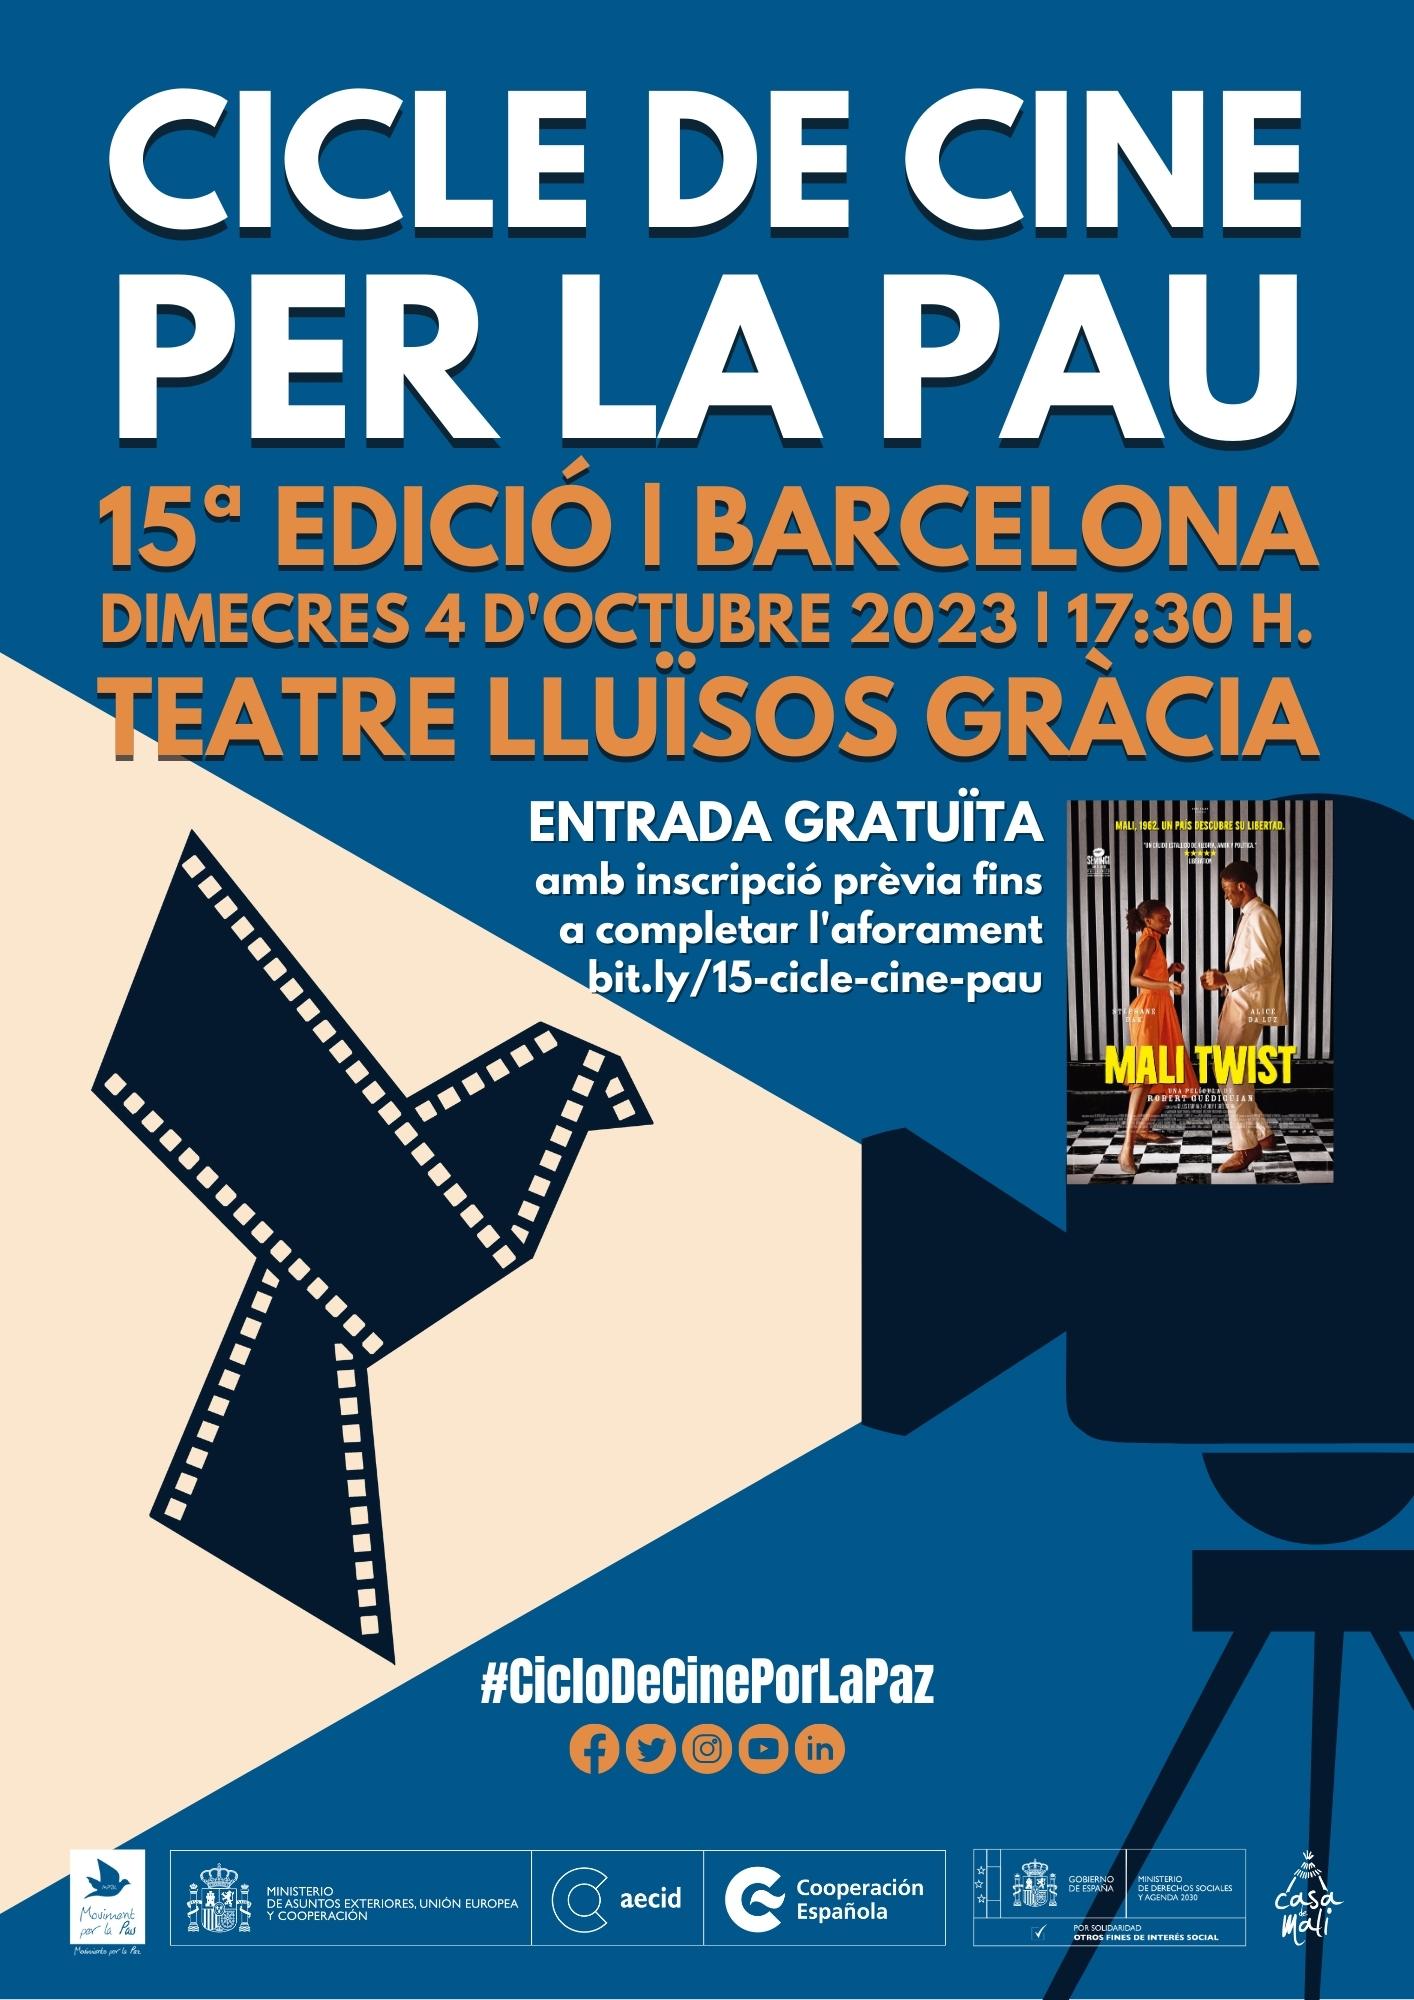 Cicle de cinema per la Pau. Dimecres 4 d'octubre projecció de la pel·lícula "Mali Twist" a les 17.30 al Teatre Lluïsos de Gràcia de Barcelona